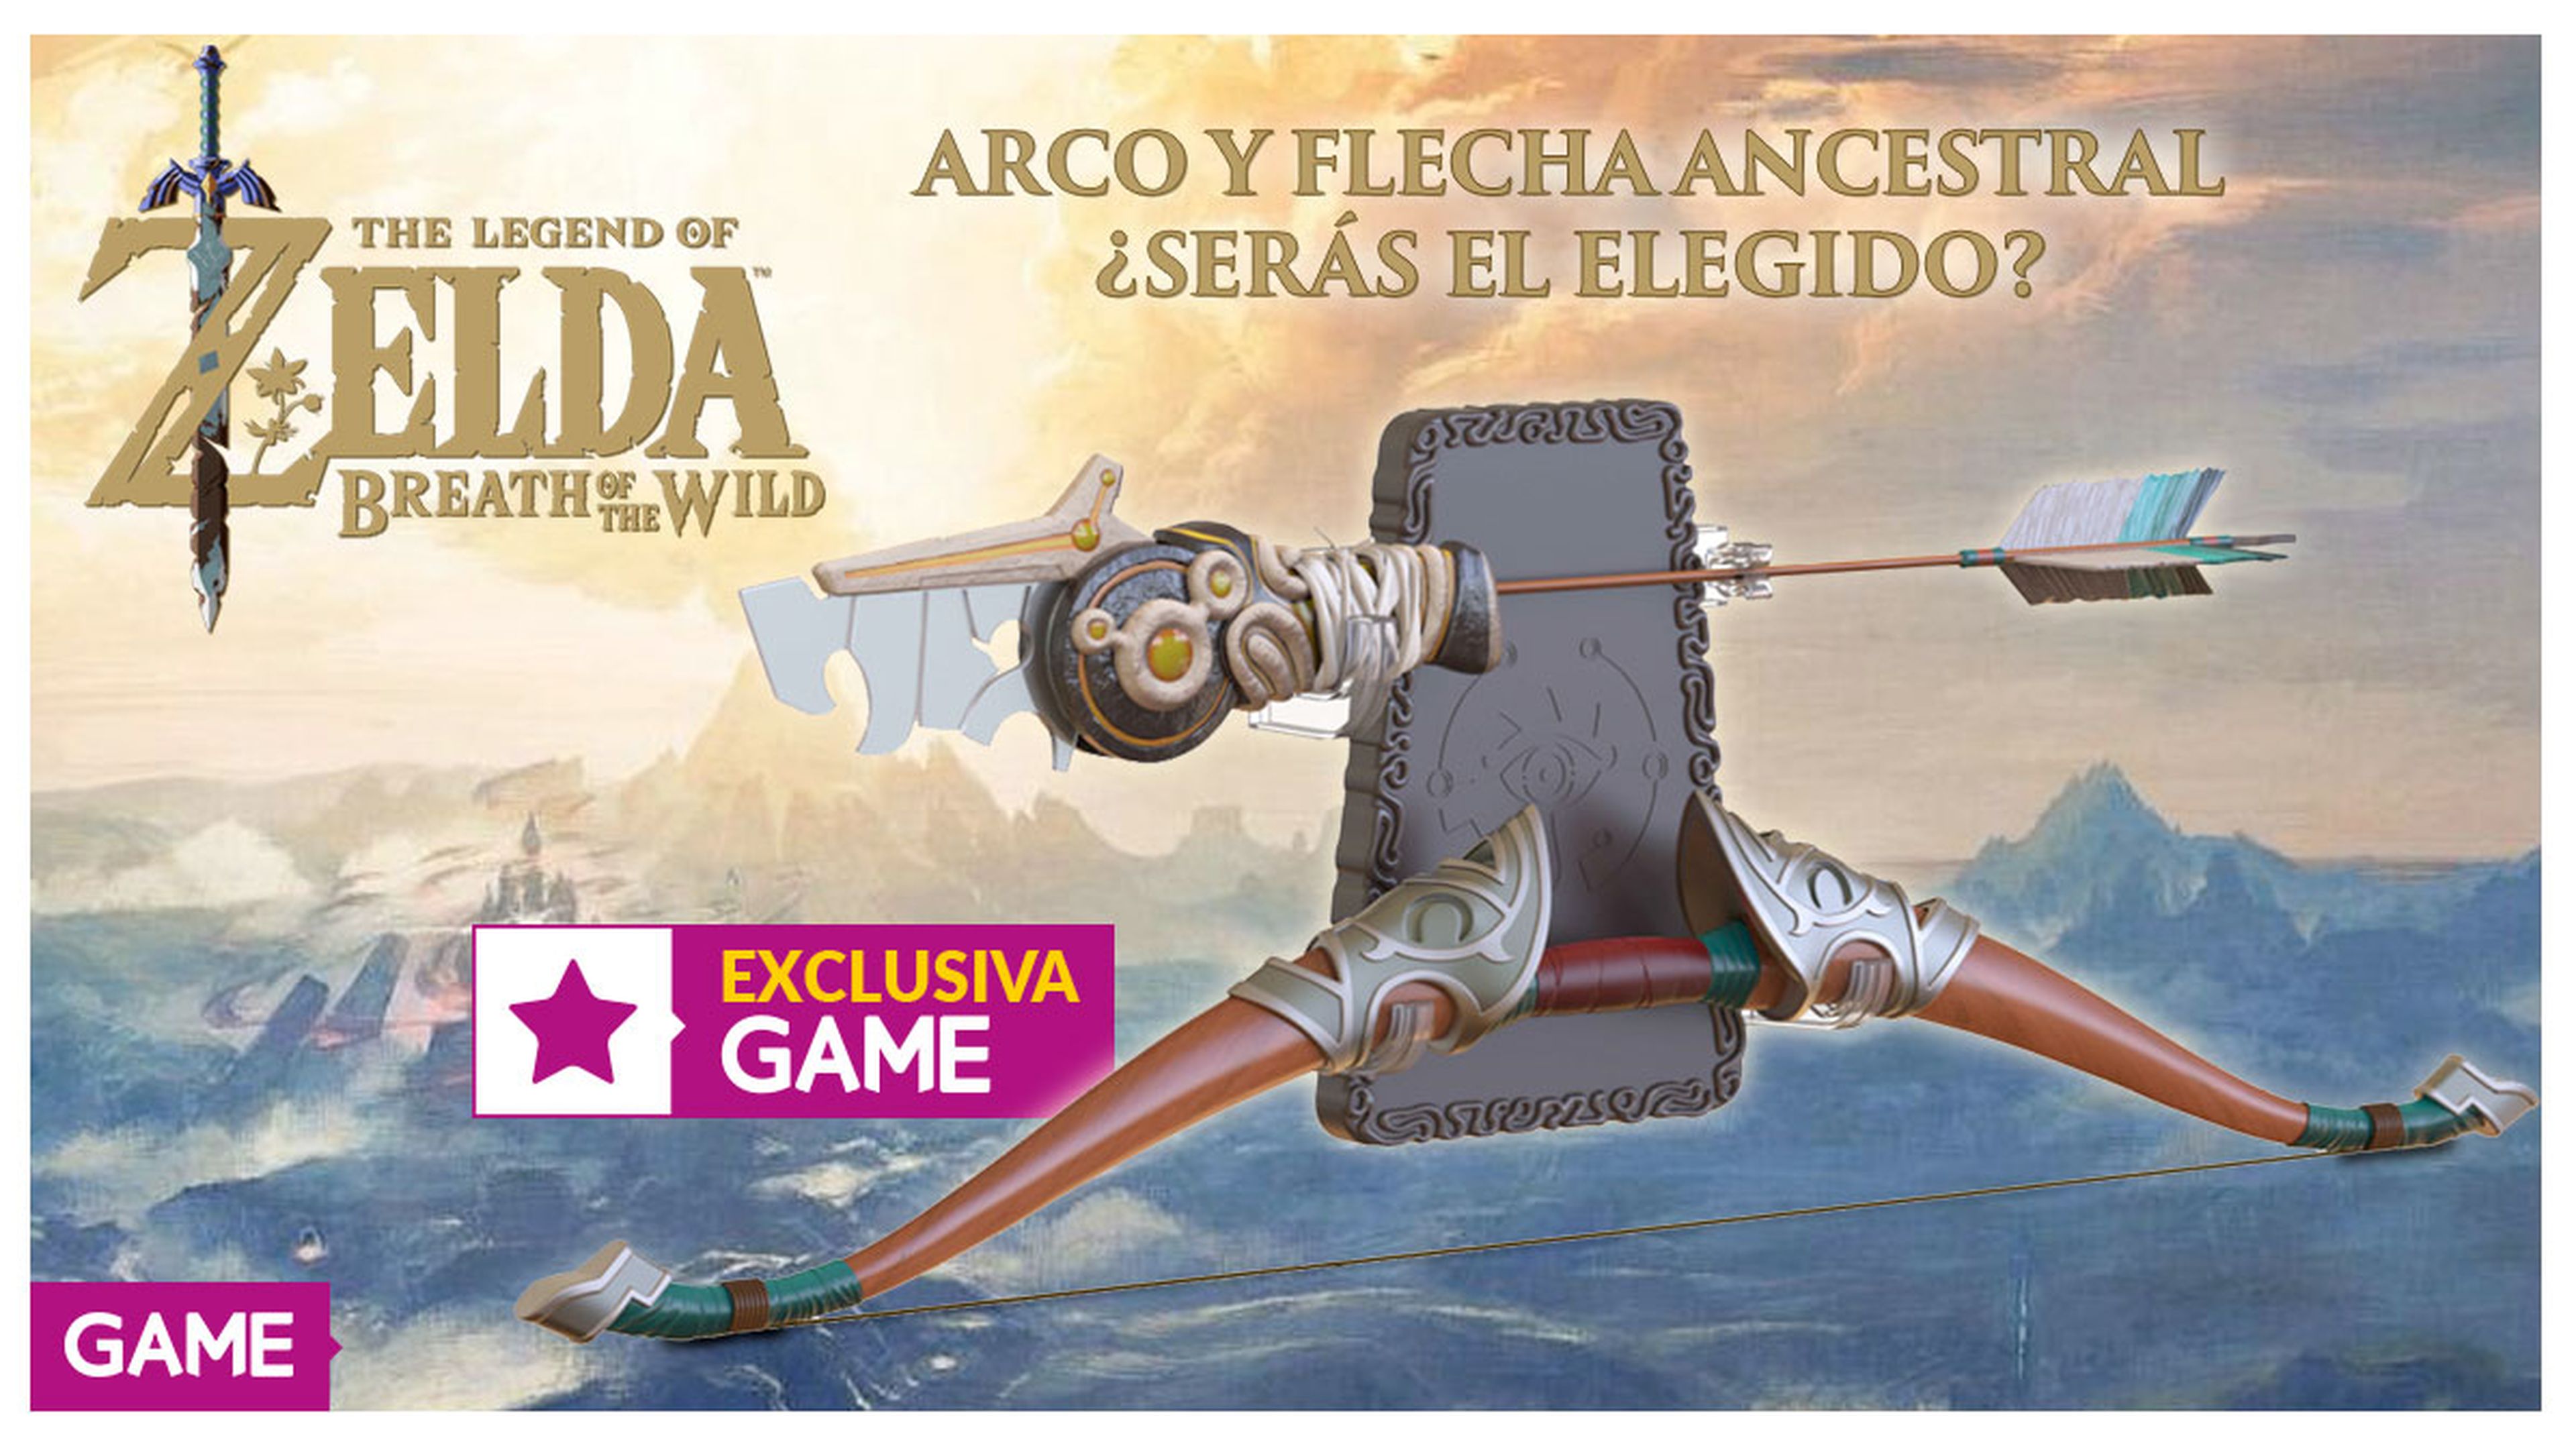 Arco y flecha de The Legend of Zelda: Breath of the Wild